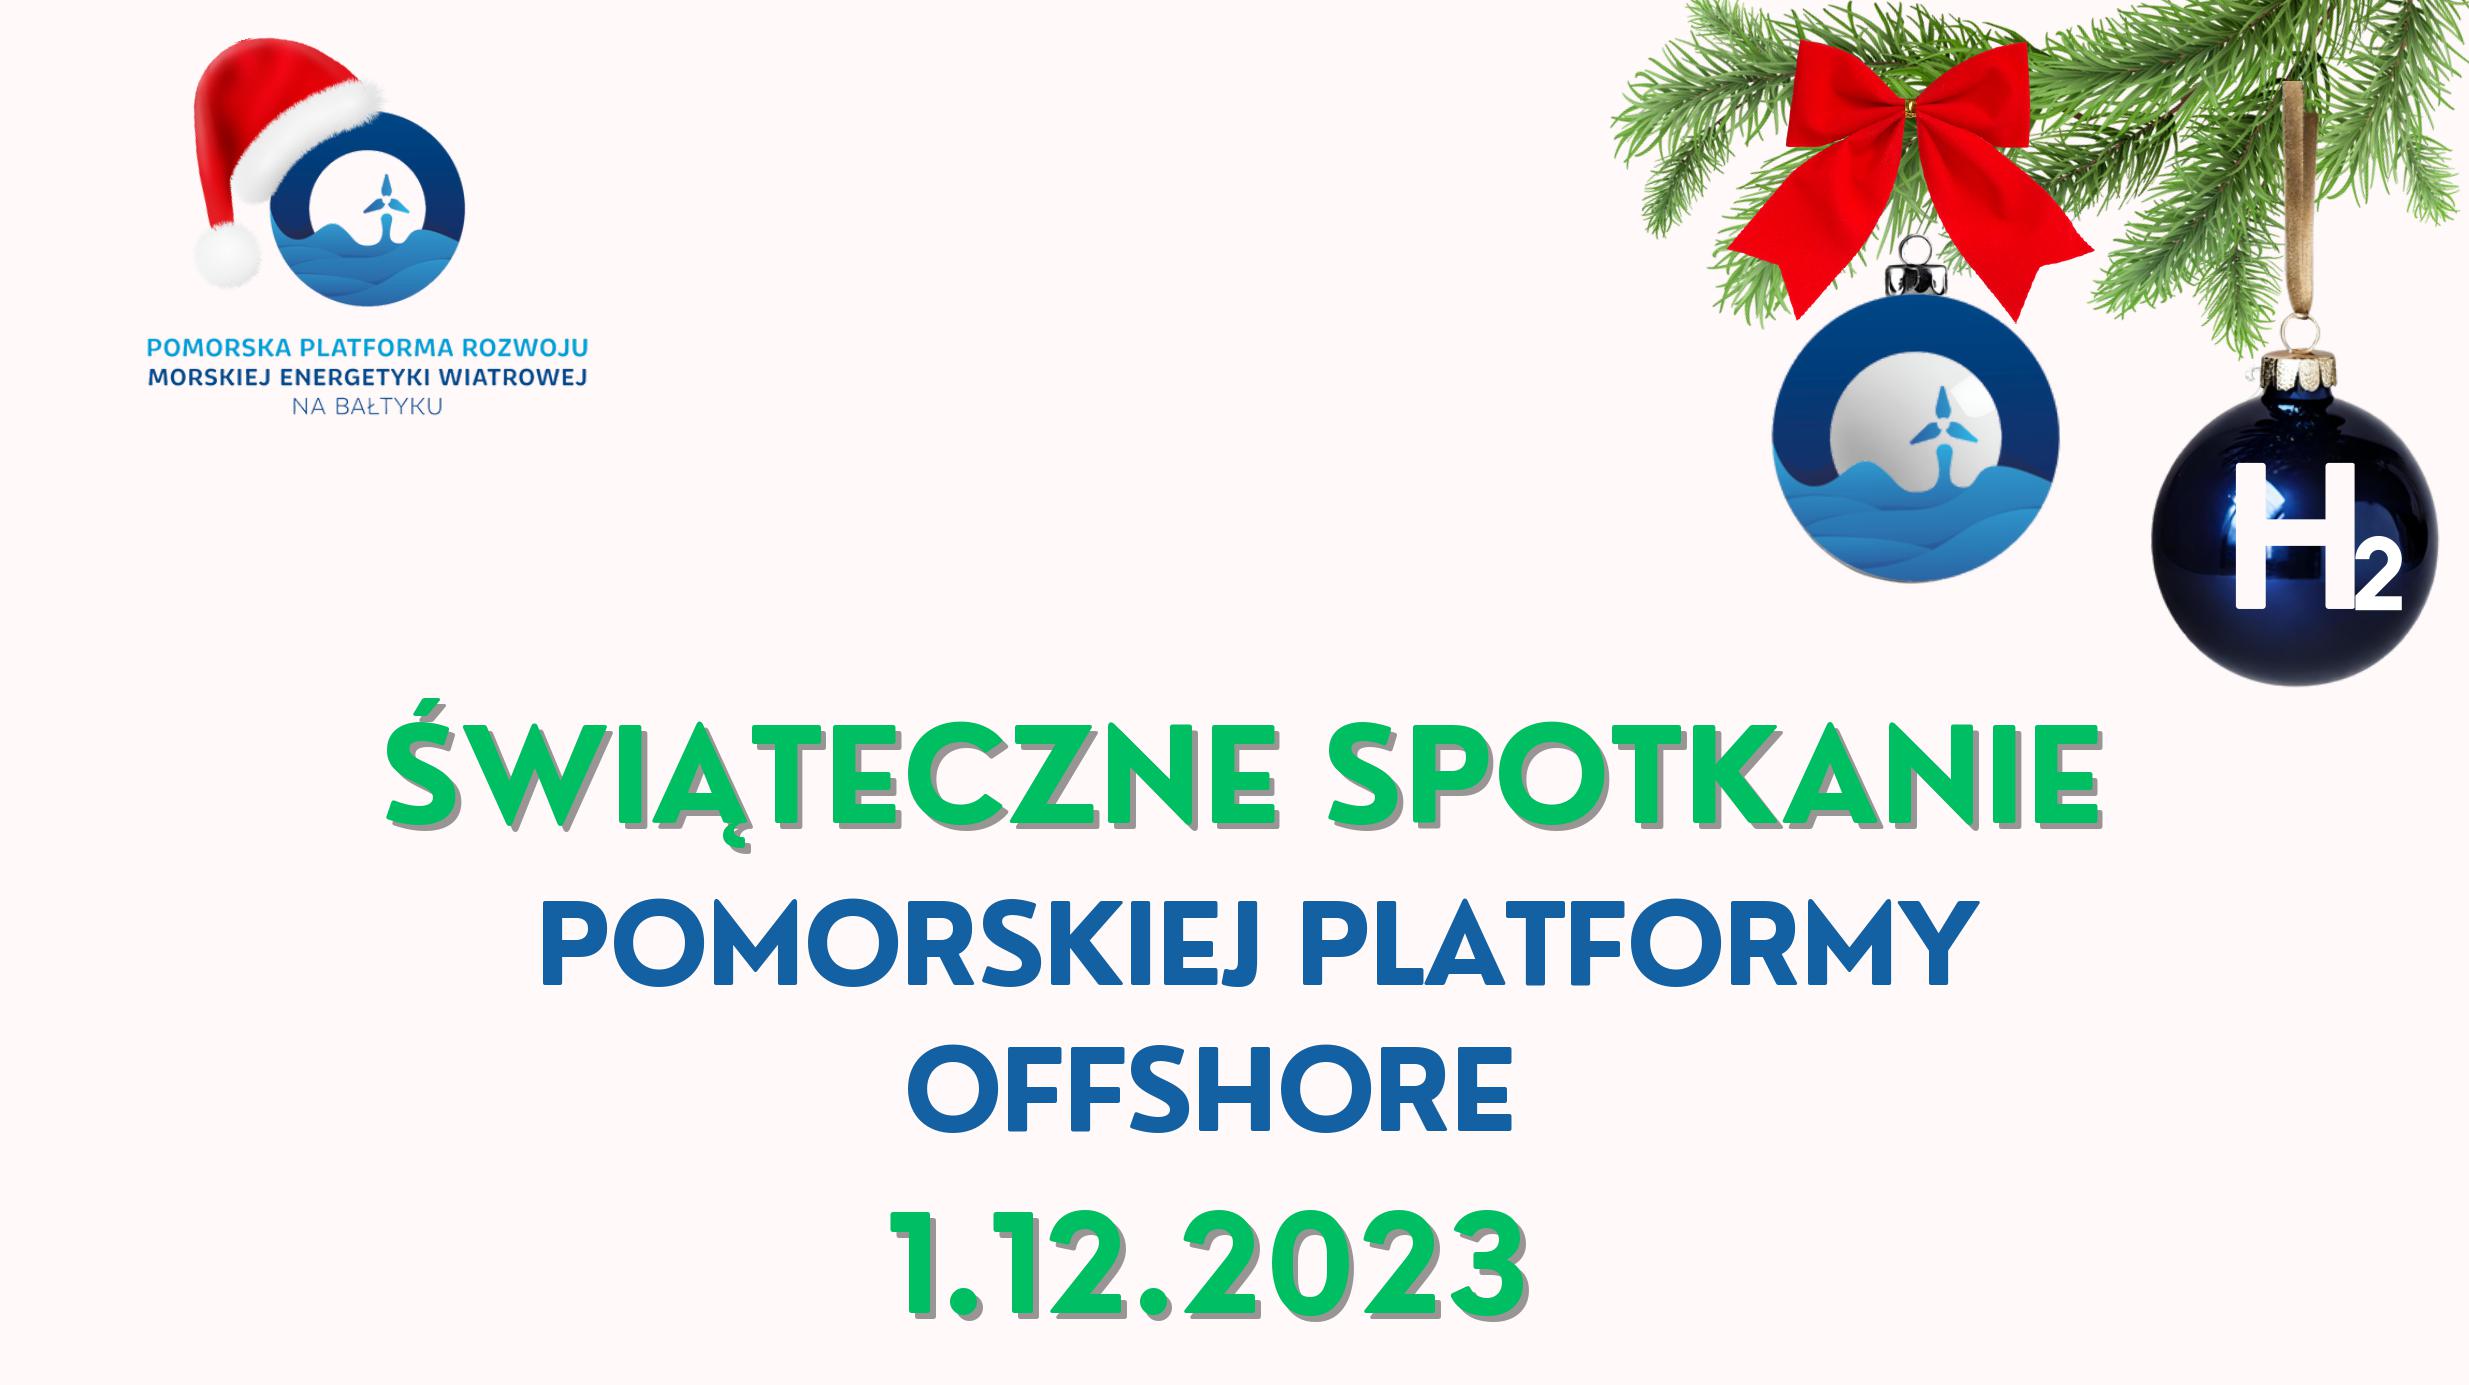 Offshore i wodór w synergii dla rozwoju zielonej energetyki – spotkanie Pomorskiej Platformy Offshore 1 grudnia 2023r.